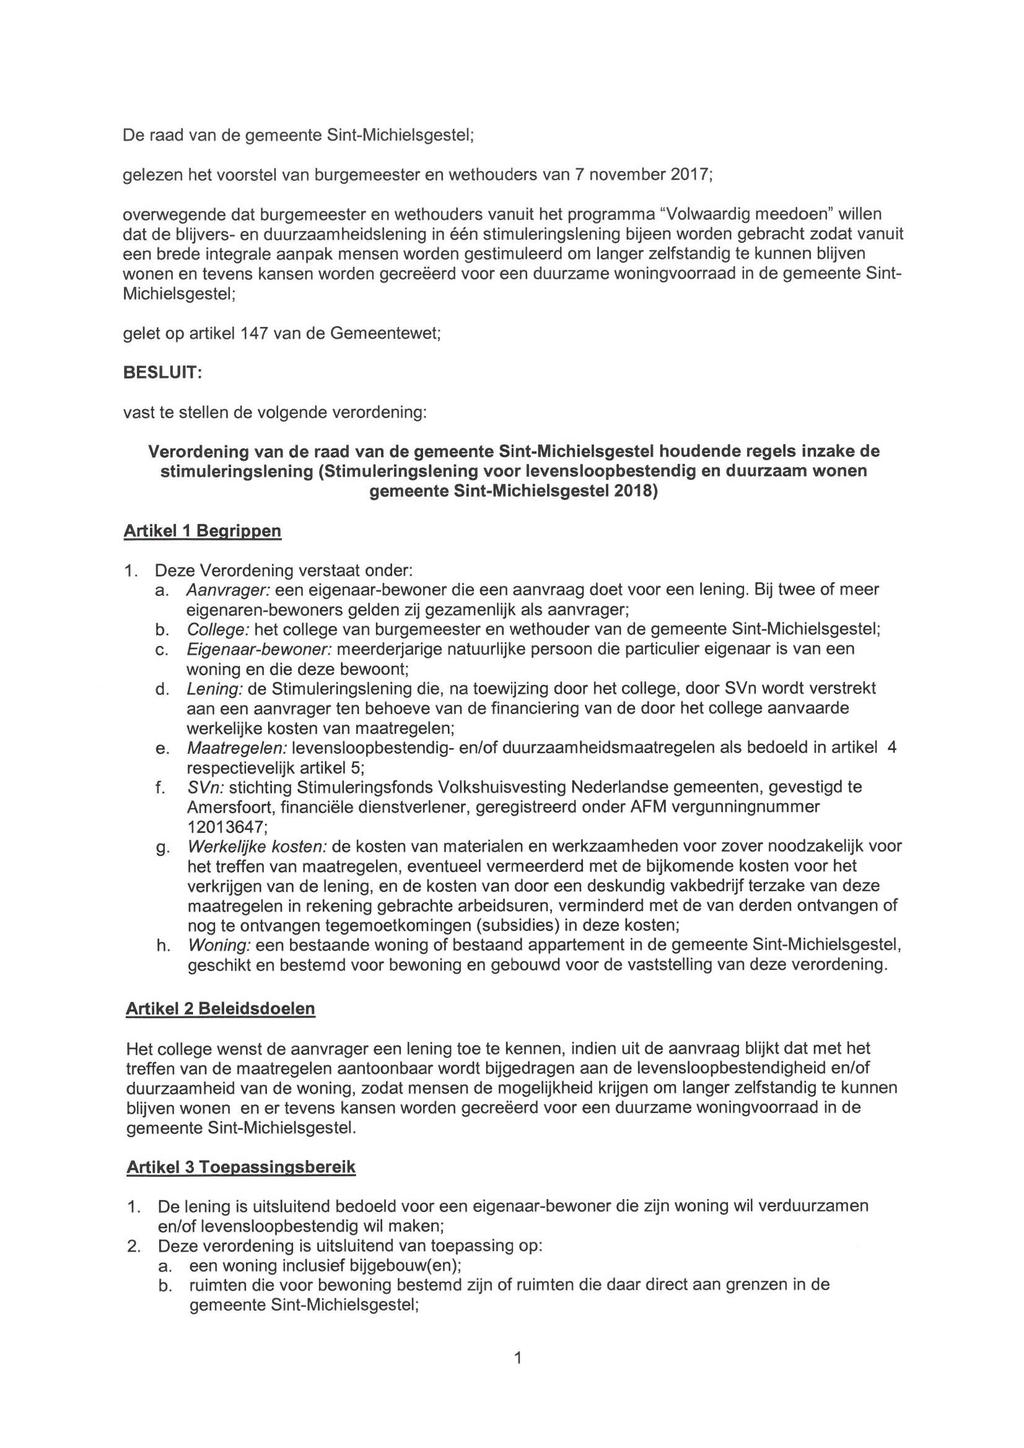 De raad van de gemeente Sint-Michielsgestel; gelezen het voorstel van burgemeester en wethouders van 7 november 2017; overwegende dat burgemeester en wethouders vanuit het programma "Volwaardig